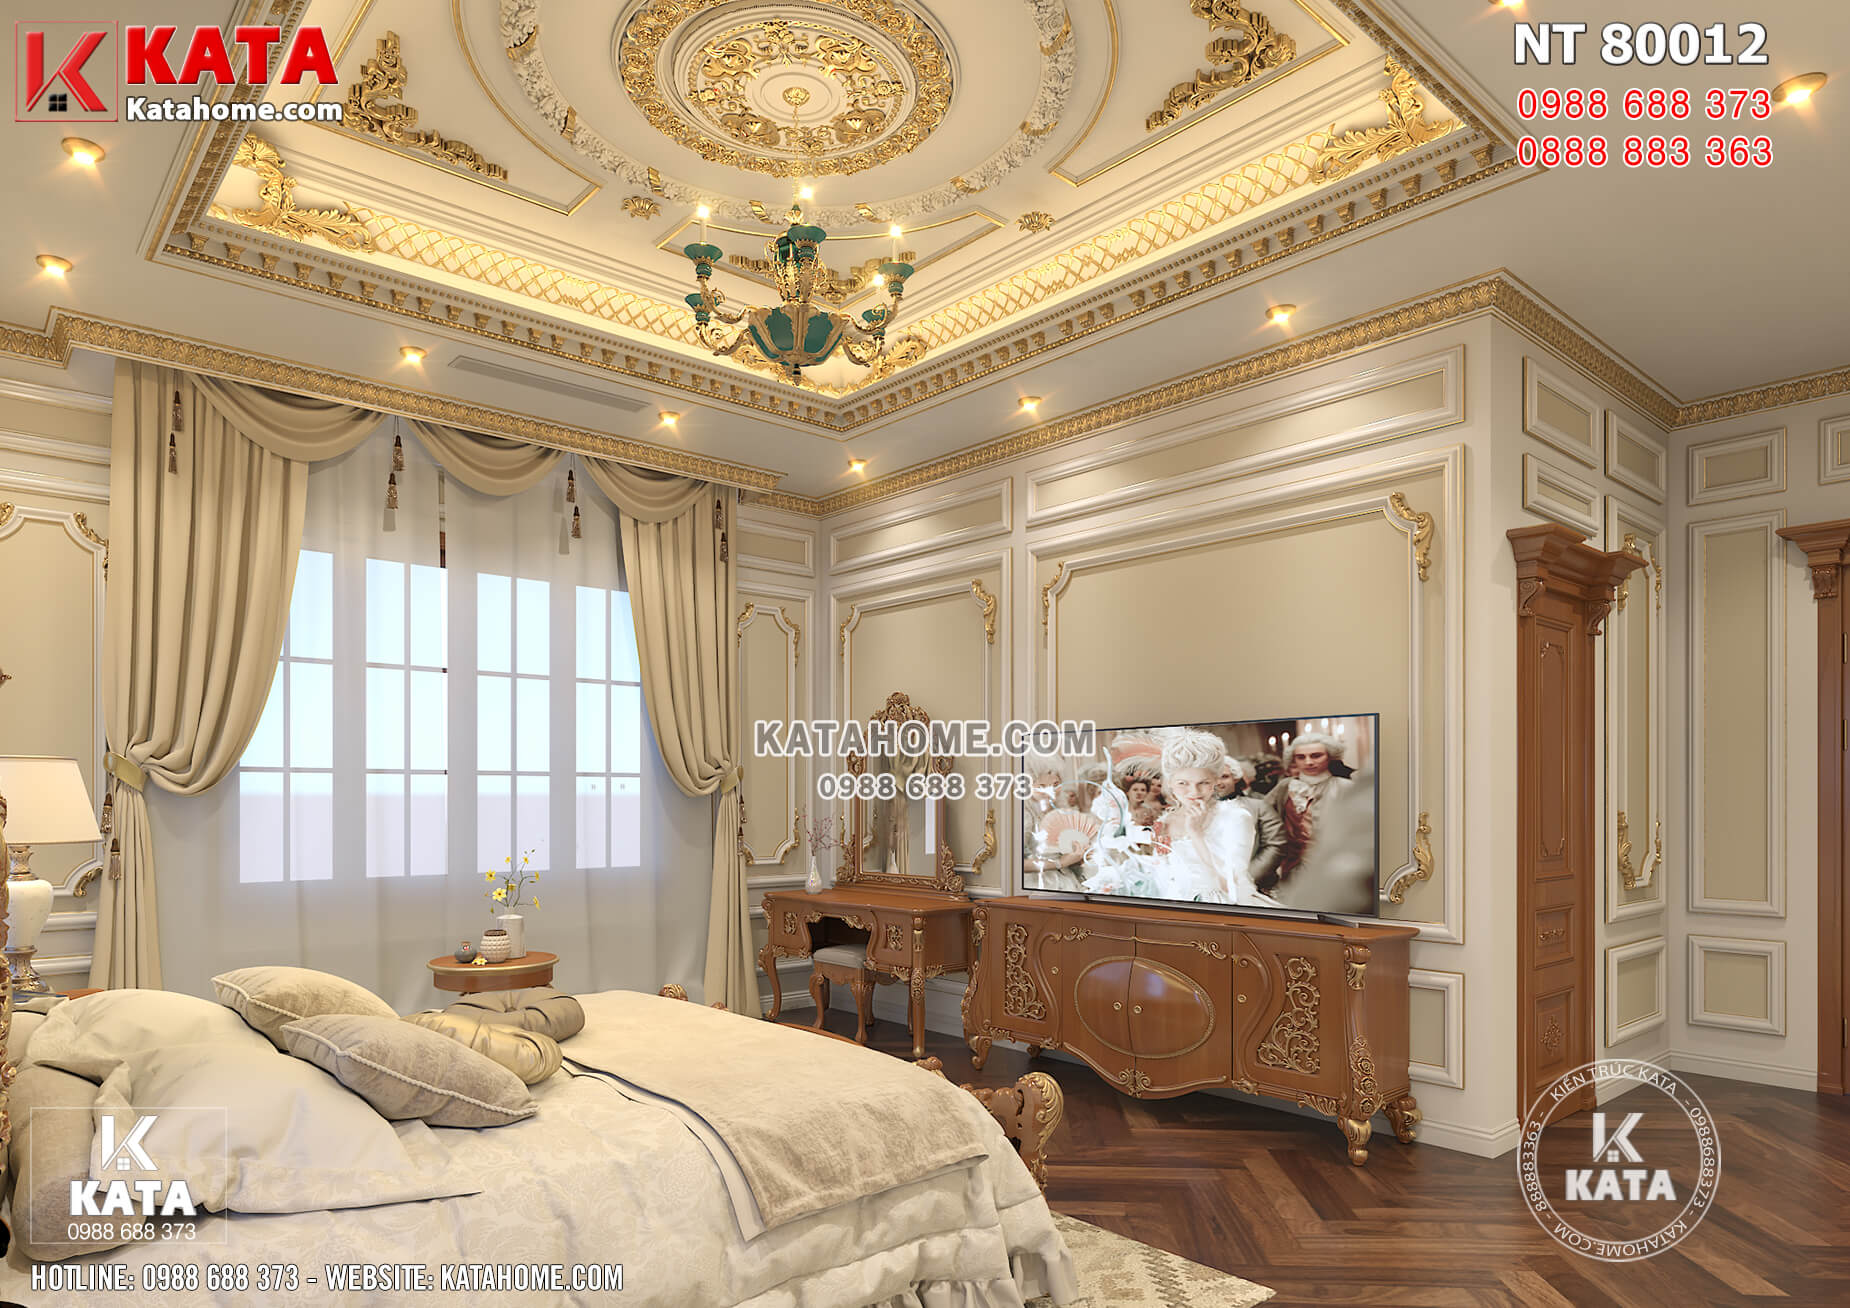 Phòng ngủ gây ấn tượng với trần thạch cao cùng hệ hoa văn phào chỉ dát vàng lộng lẫy